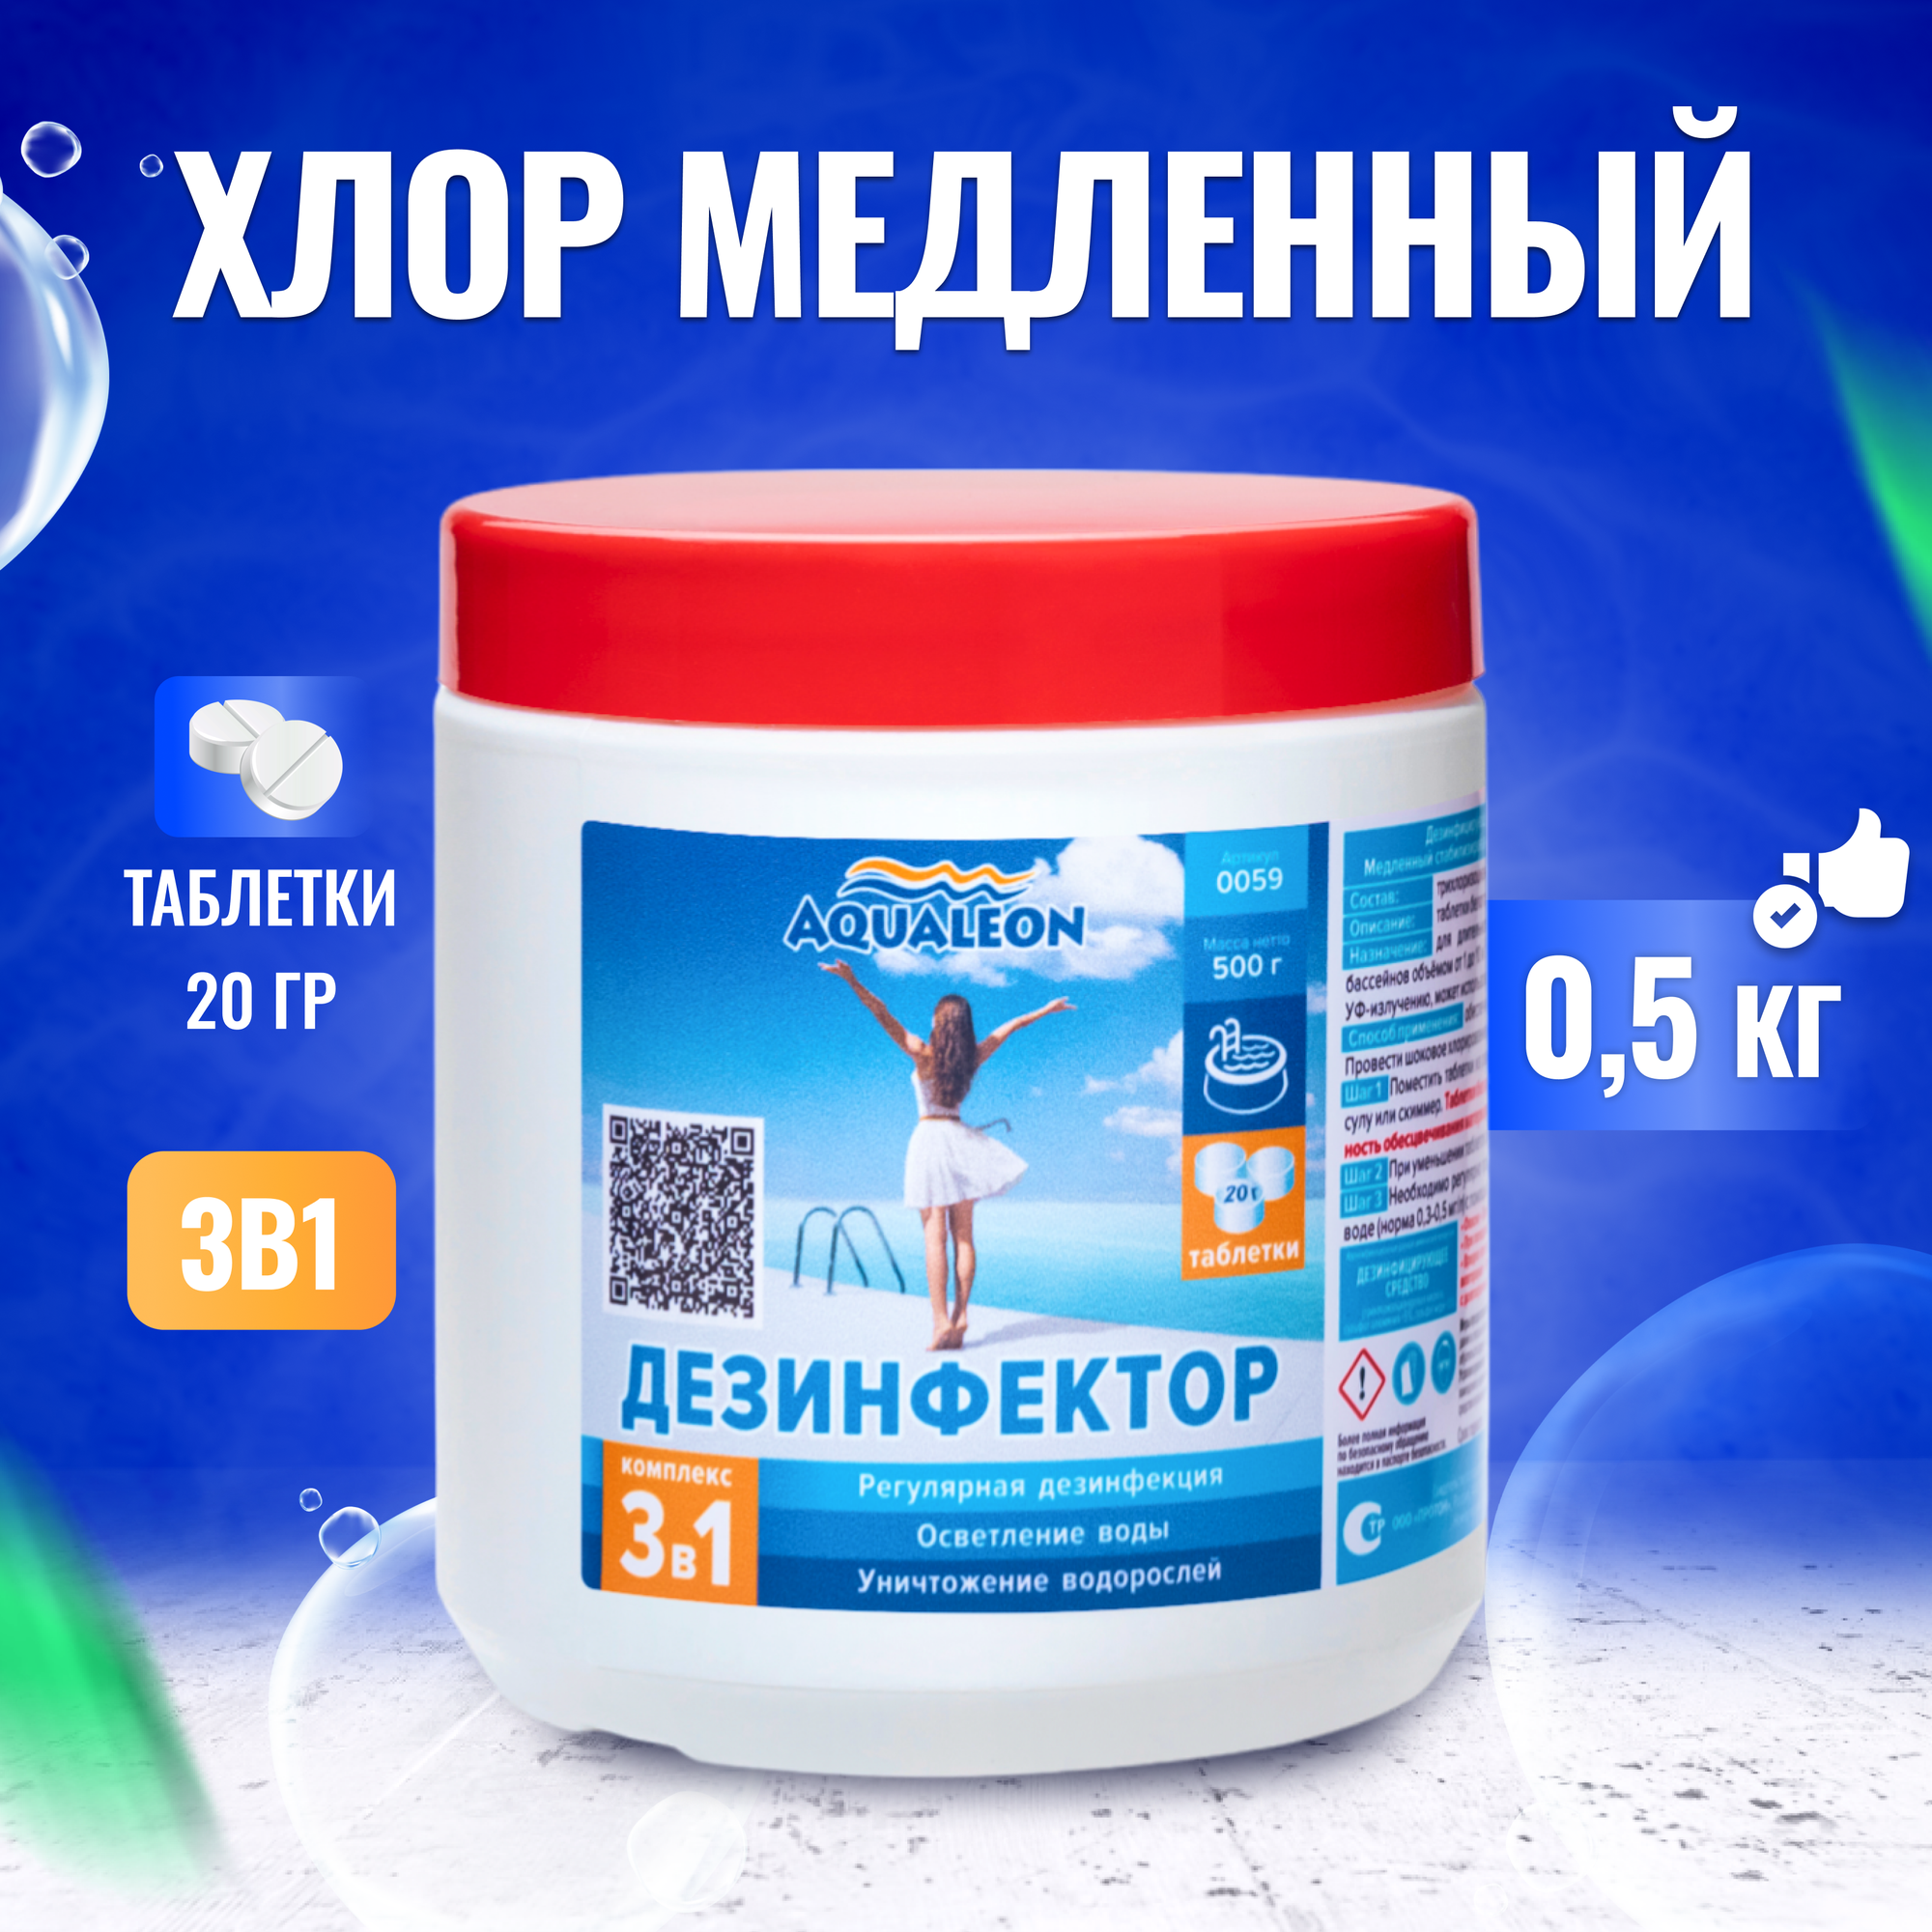 Aqualeon Дезинфектор МСХ КД (в таблетках 20 г) 0,5 кг 0059, арт. 73613